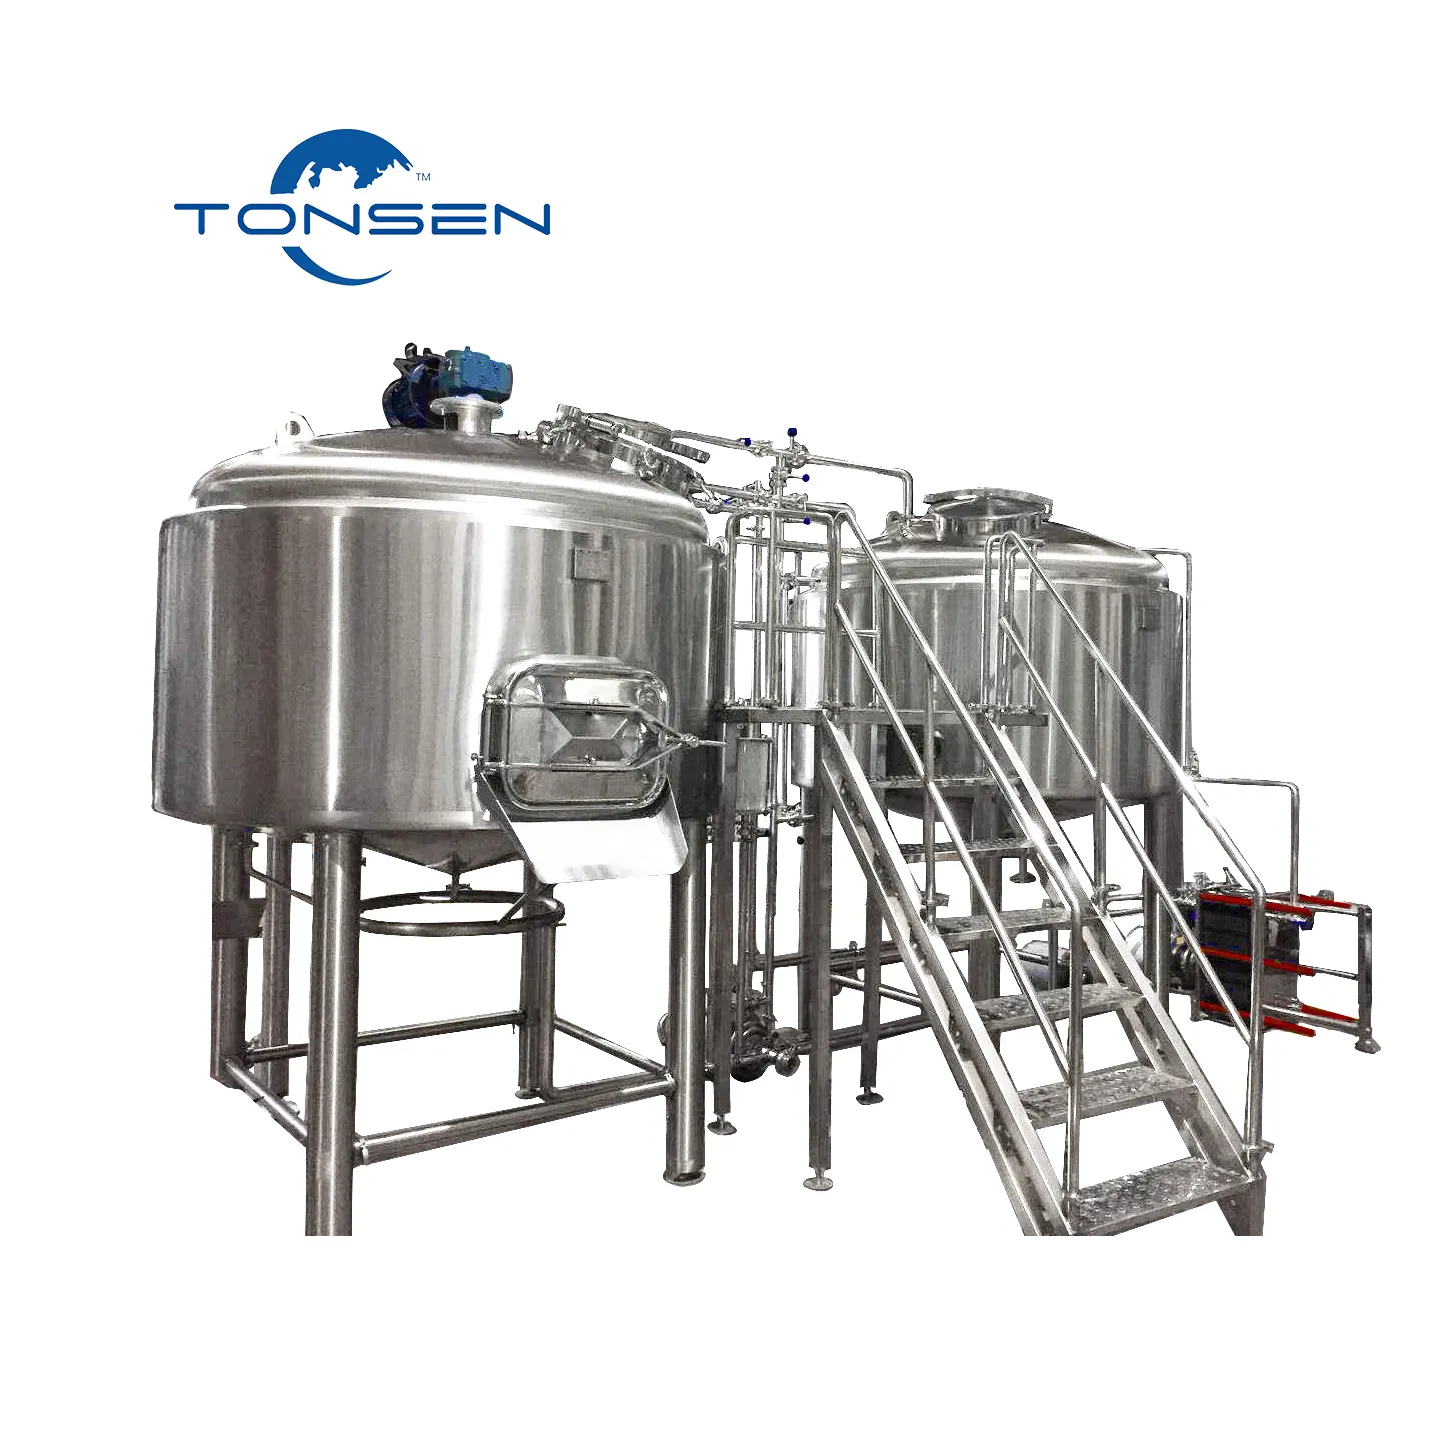 Casa de fermentação de cerveja a vapor, 1000l, 1000 litros, 10hl, equipamento de fermentação de cerveja pequena, projeto de chave inglesa